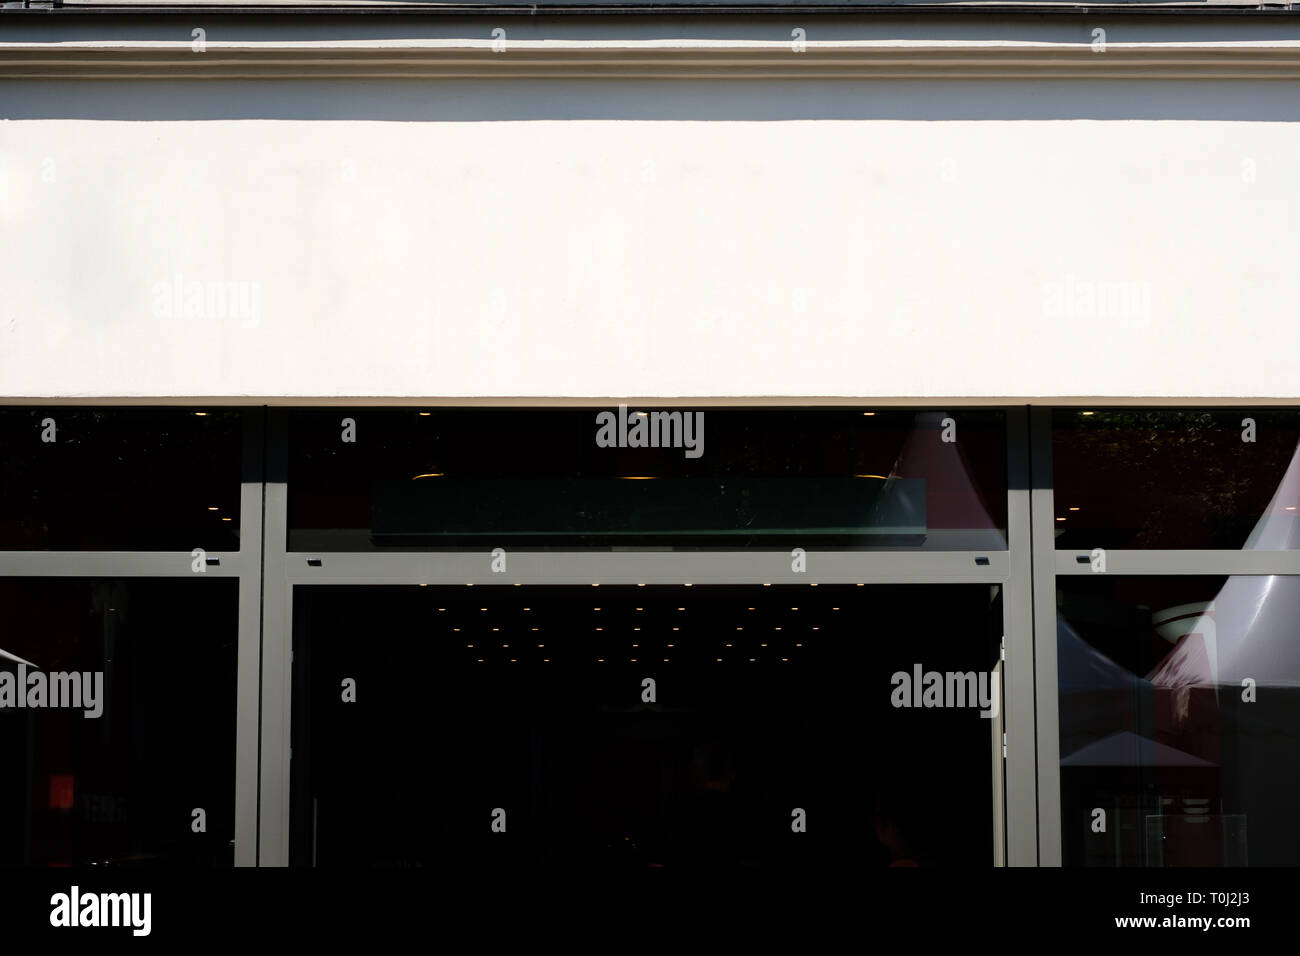 Ingresso shop, negozio facciata anteriore billboard mockup - Foto Stock